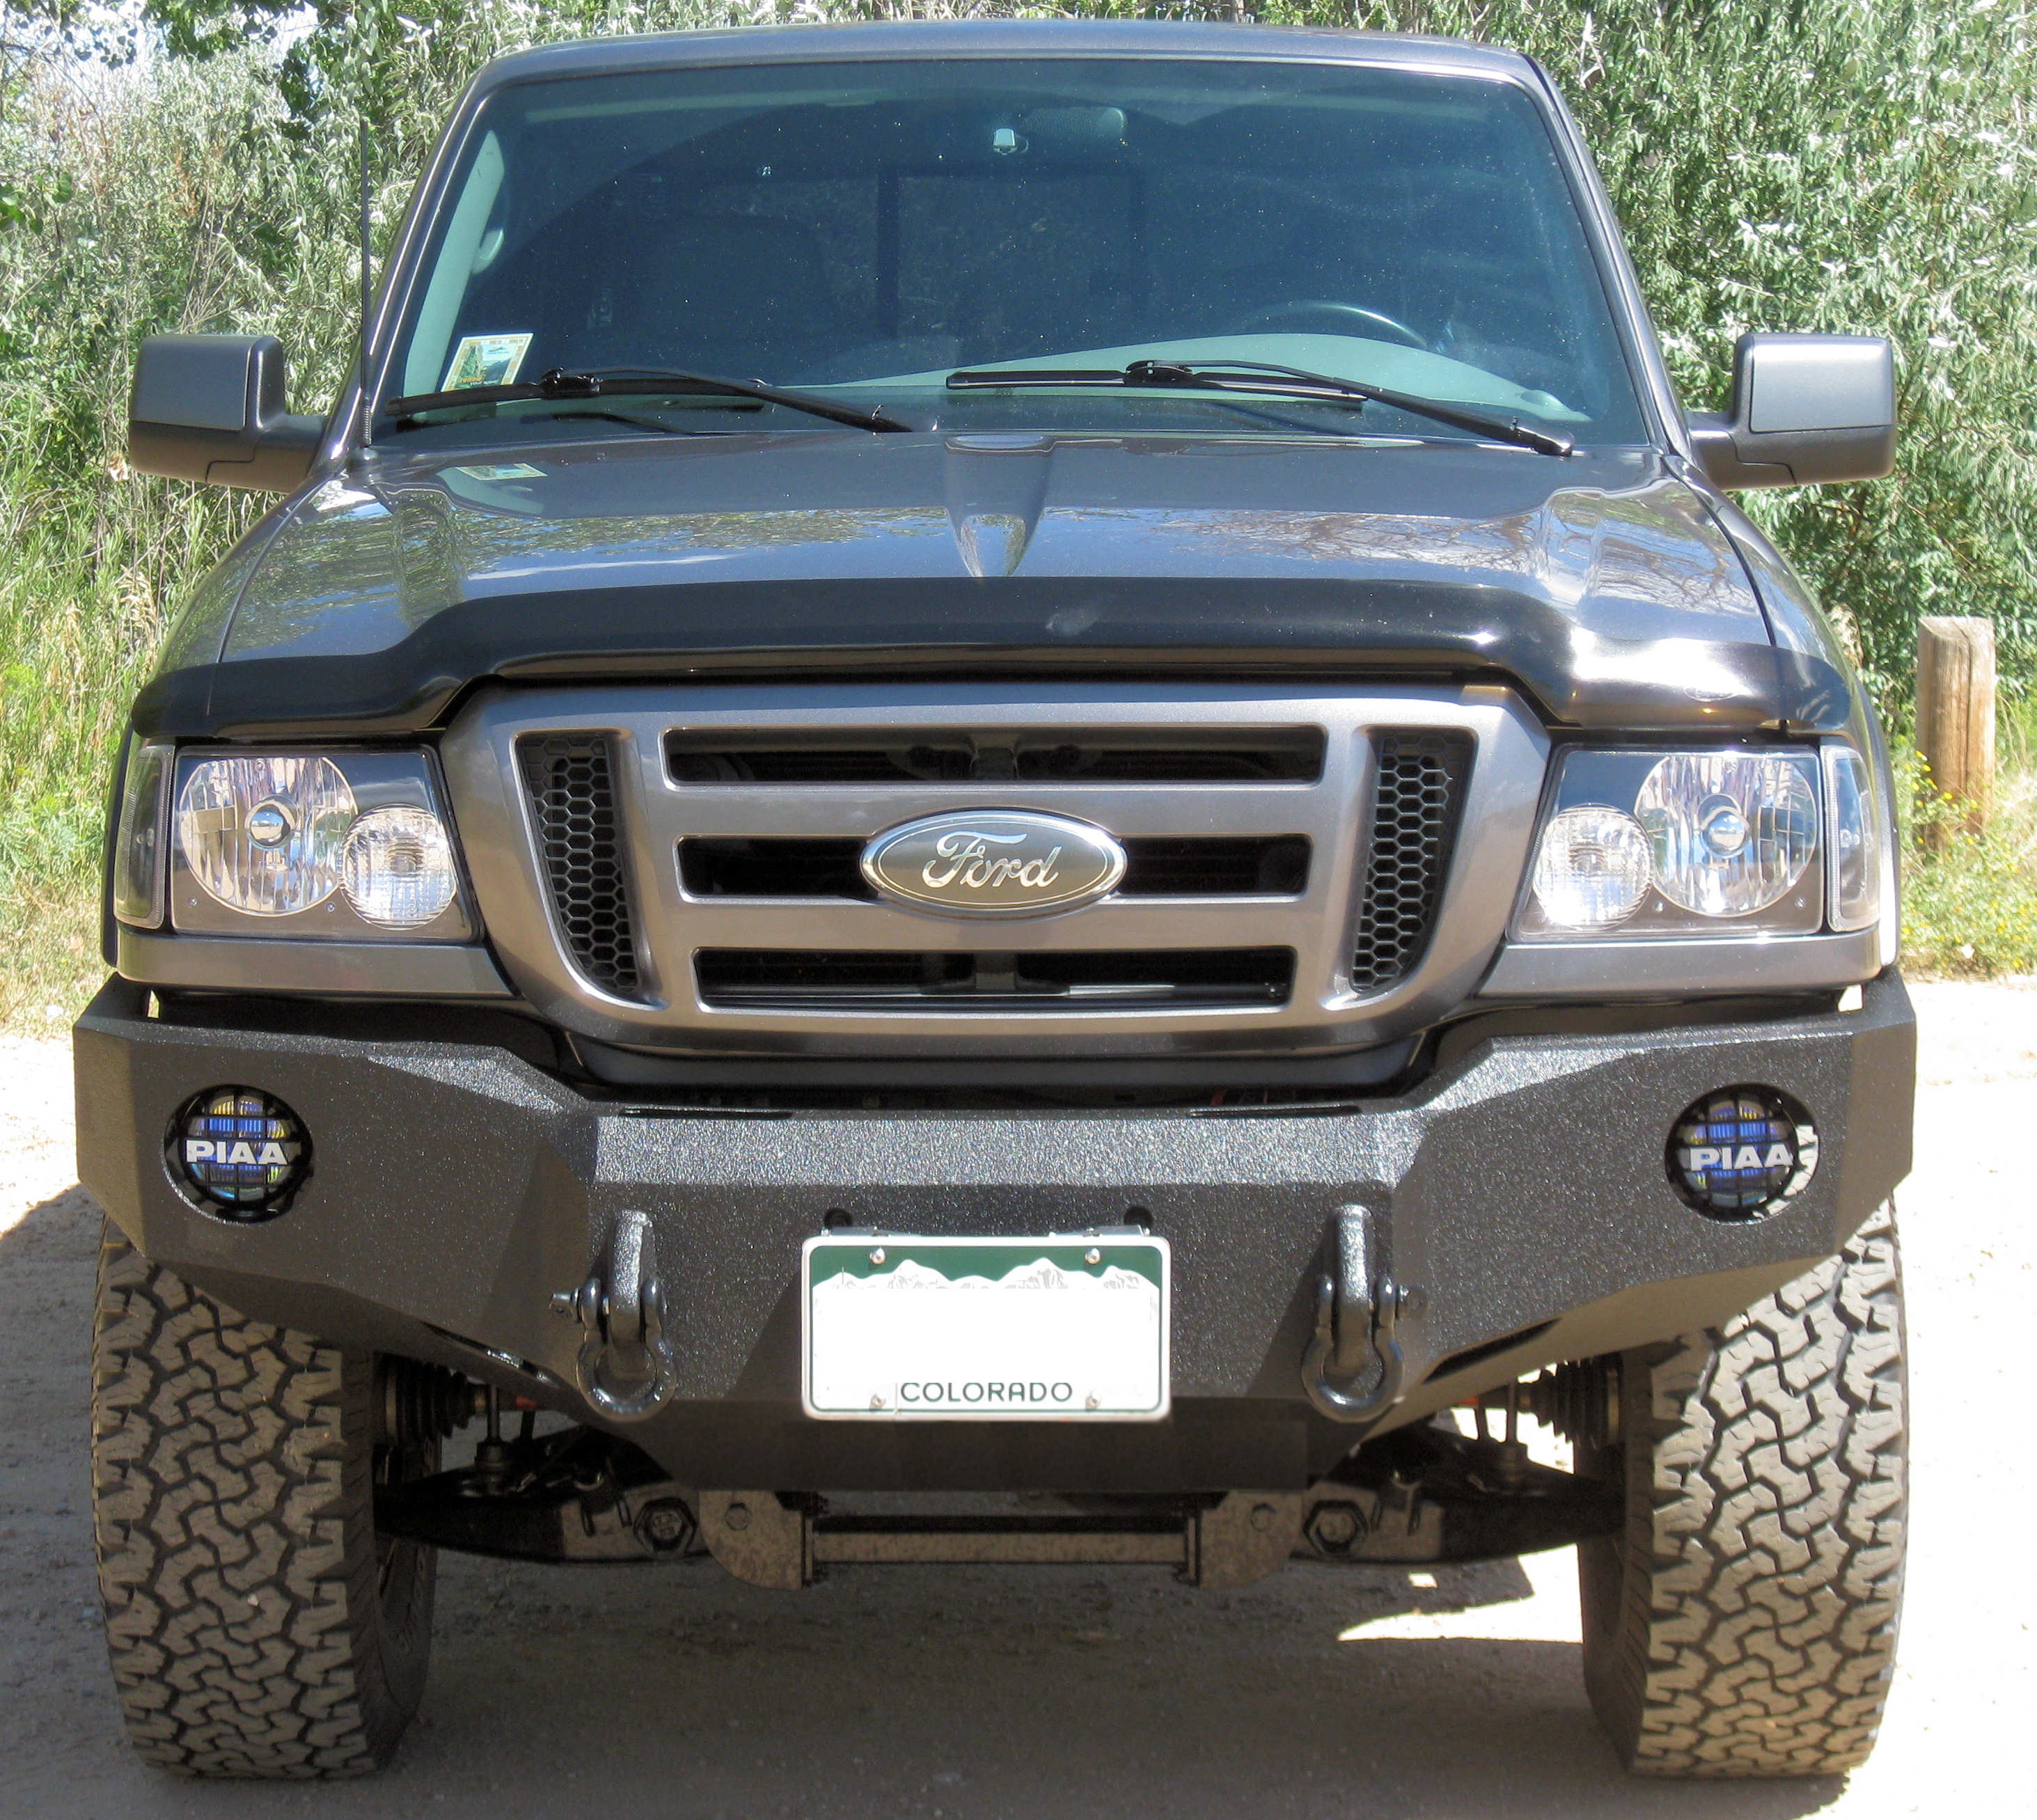 98-12 Ford Ranger front base bumper